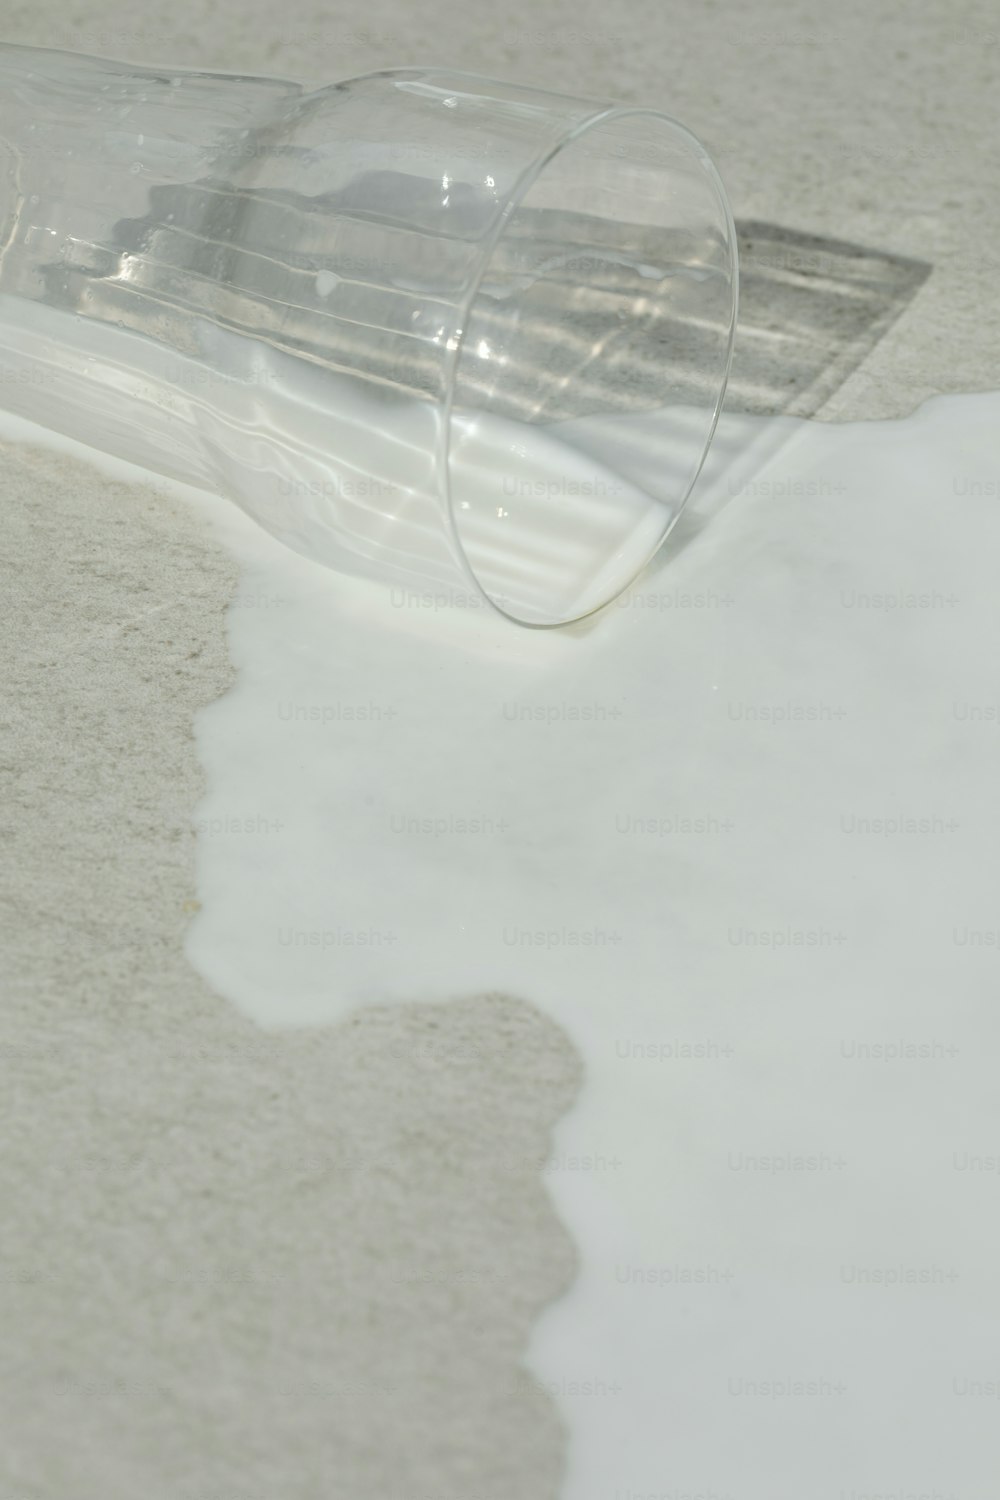 흰색 바닥 위에 놓인 투명한 플라스틱 튜브